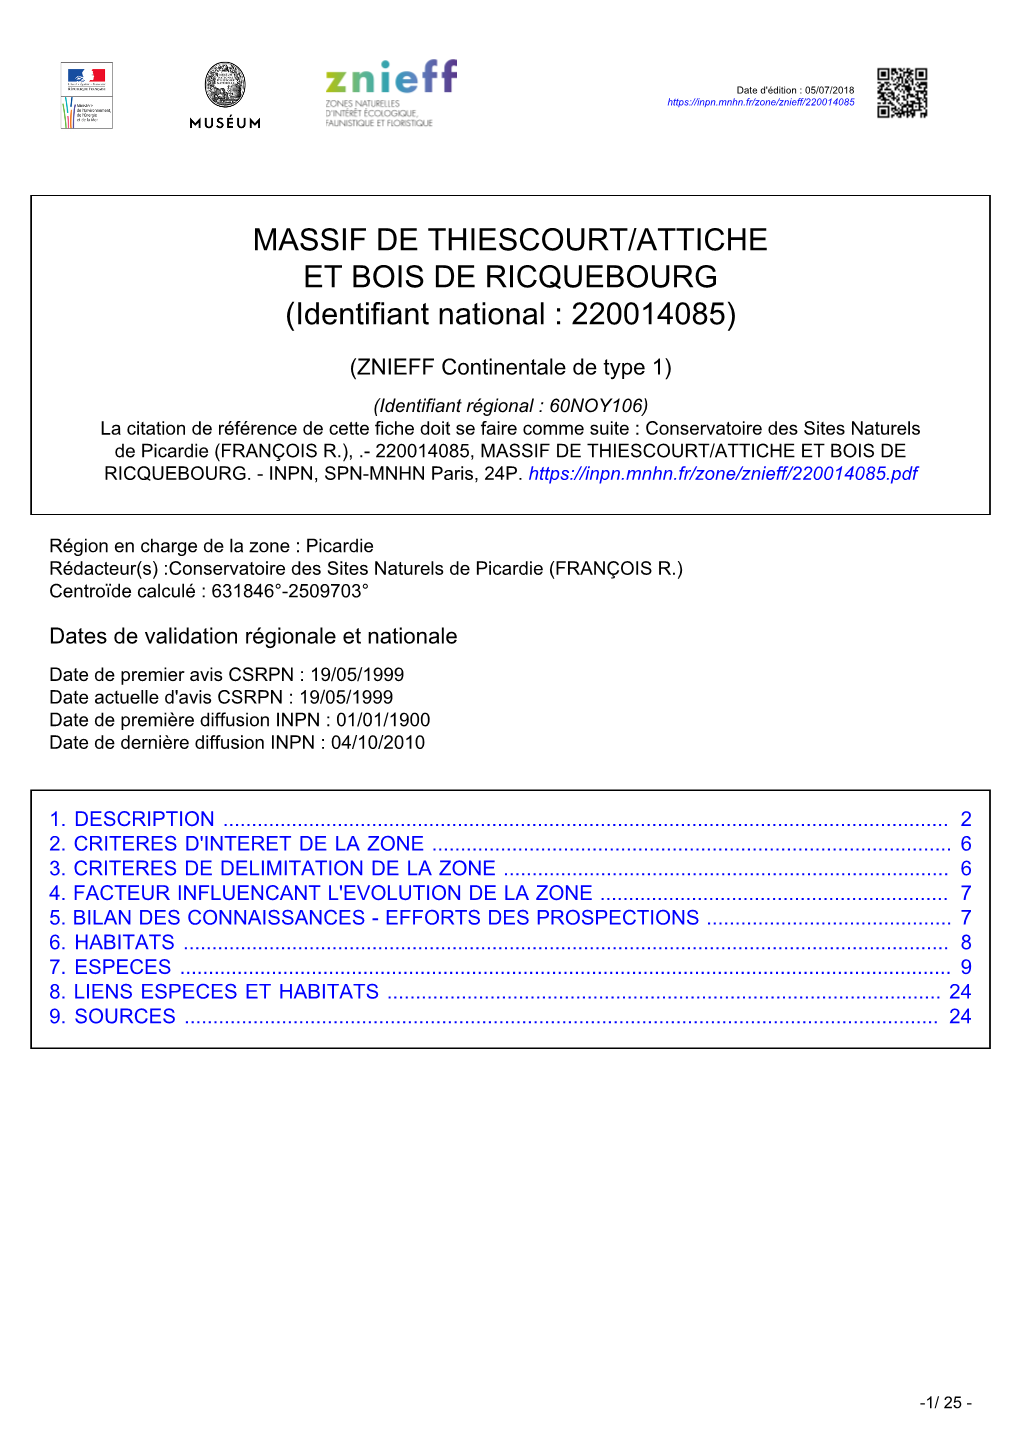 MASSIF DE THIESCOURT/ATTICHE ET BOIS DE RICQUEBOURG (Identifiant National : 220014085)